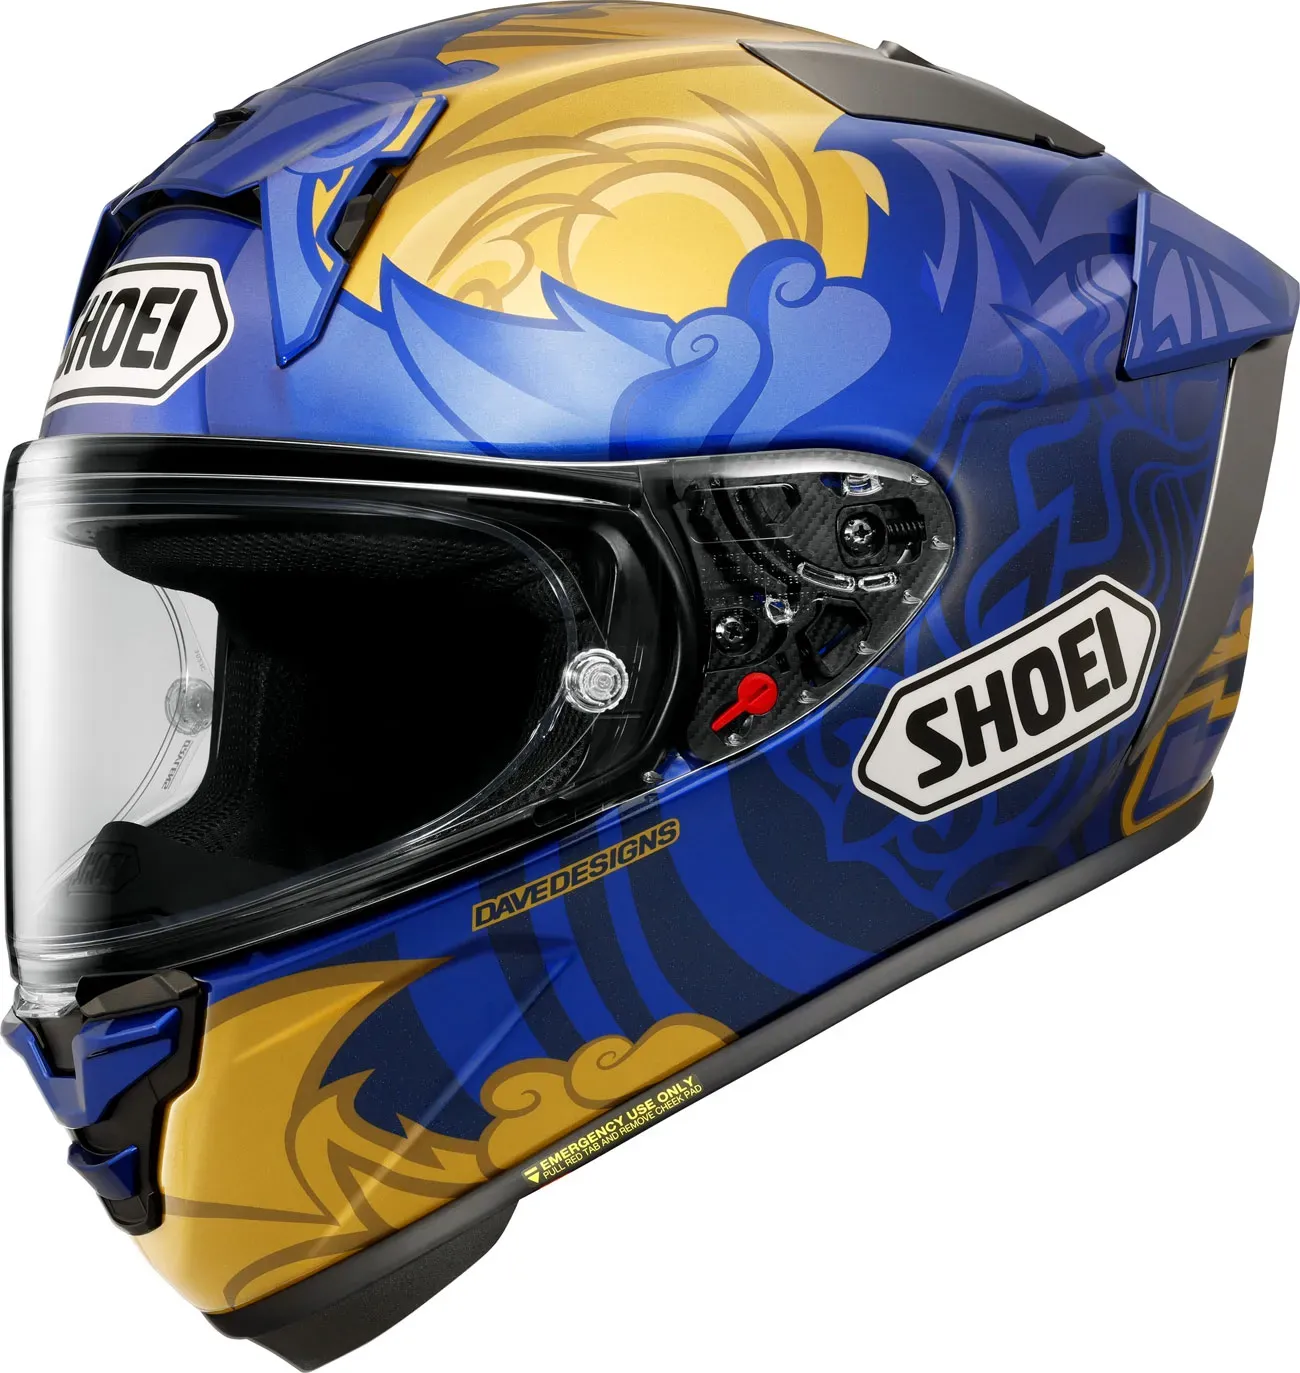 Shoei X-SPR Pro Marquez Thai, casque intégral - Bleu/Or - L